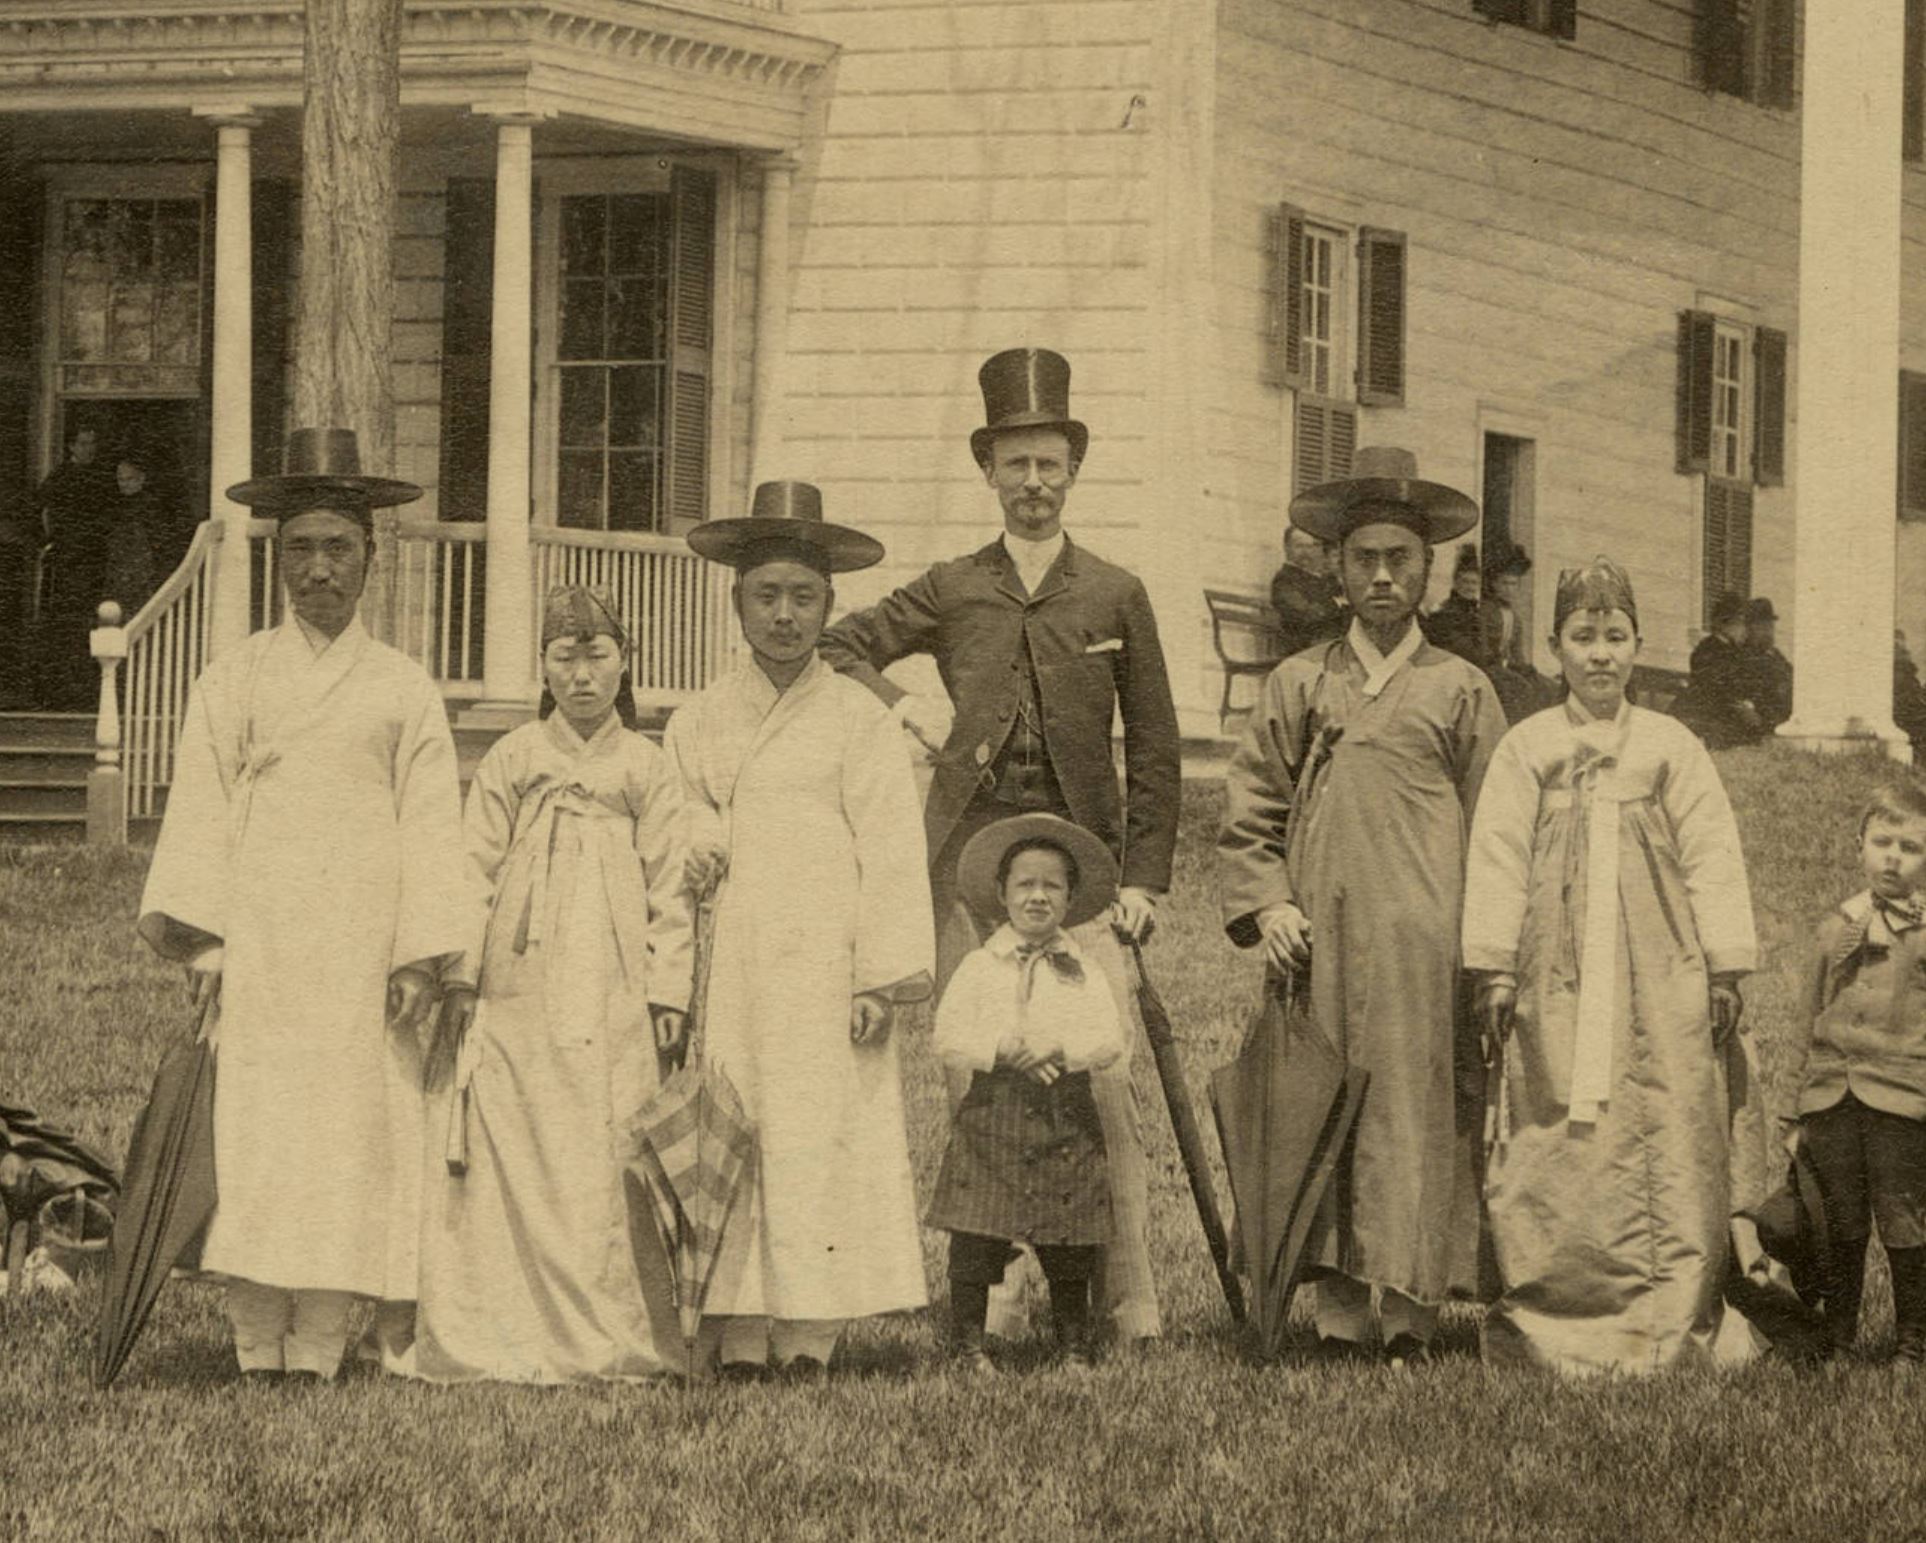 1889.5.6. 마운트 버넌 방문 당시. (왼쪽부터) 이하영, 이채연의 부인, 이채연, 알렌과 알렌의 딸, 이완용, 이완용의 부인